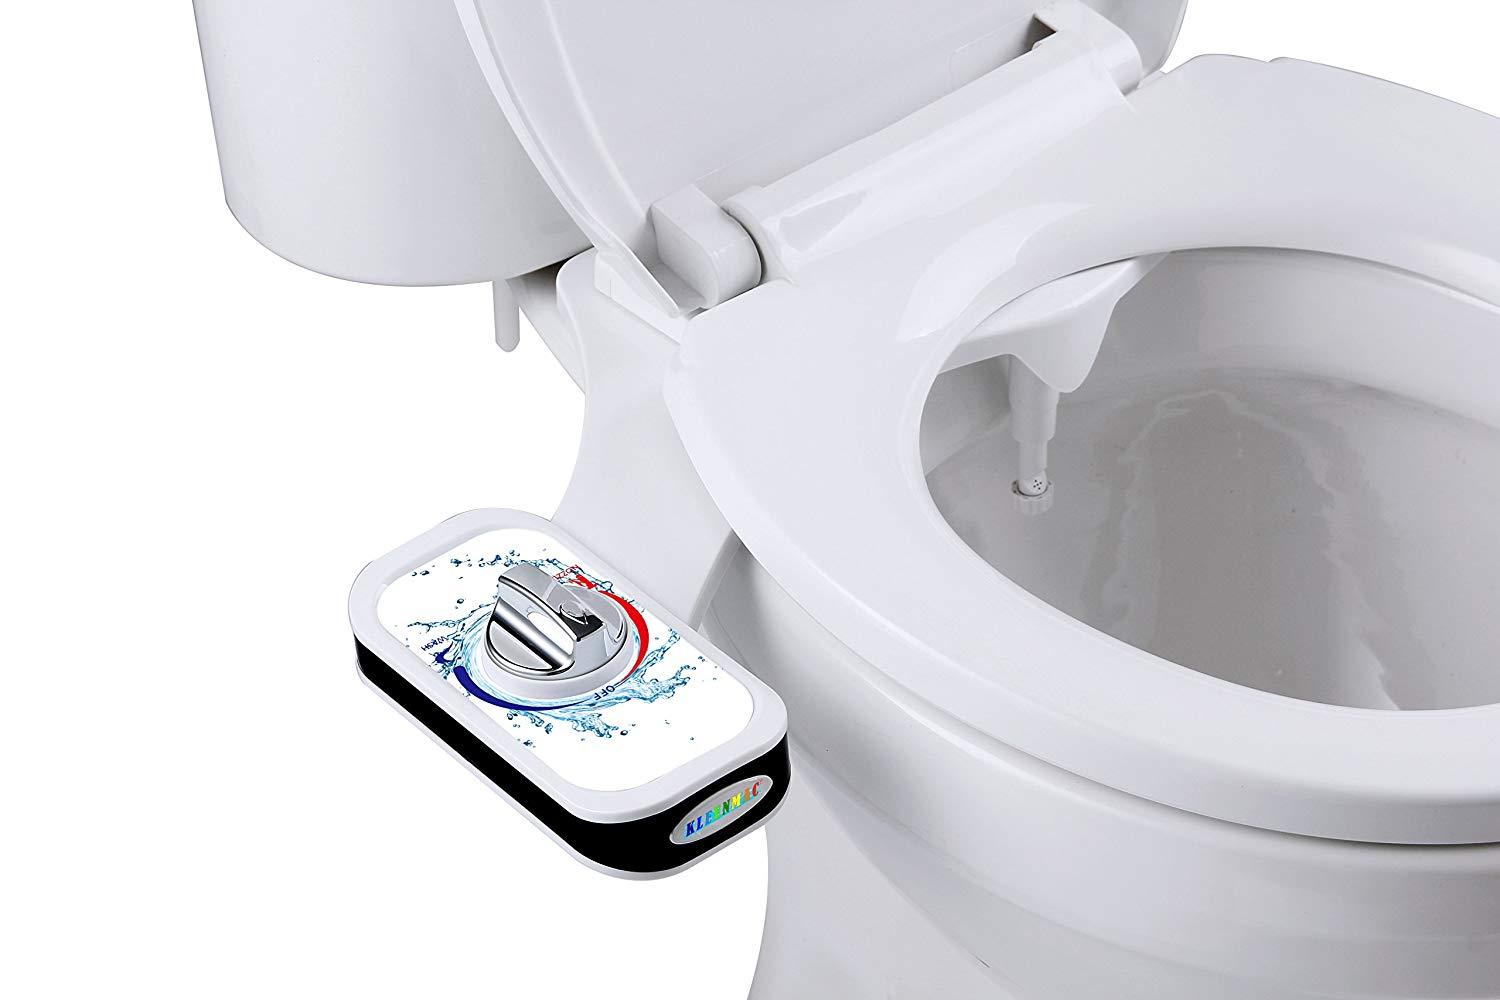 Vòi xịt vệ sinh tự động Kleenmac mang đến cảm giác sạch sẽ, thú vị sau mỗi lần đi vệ sinh